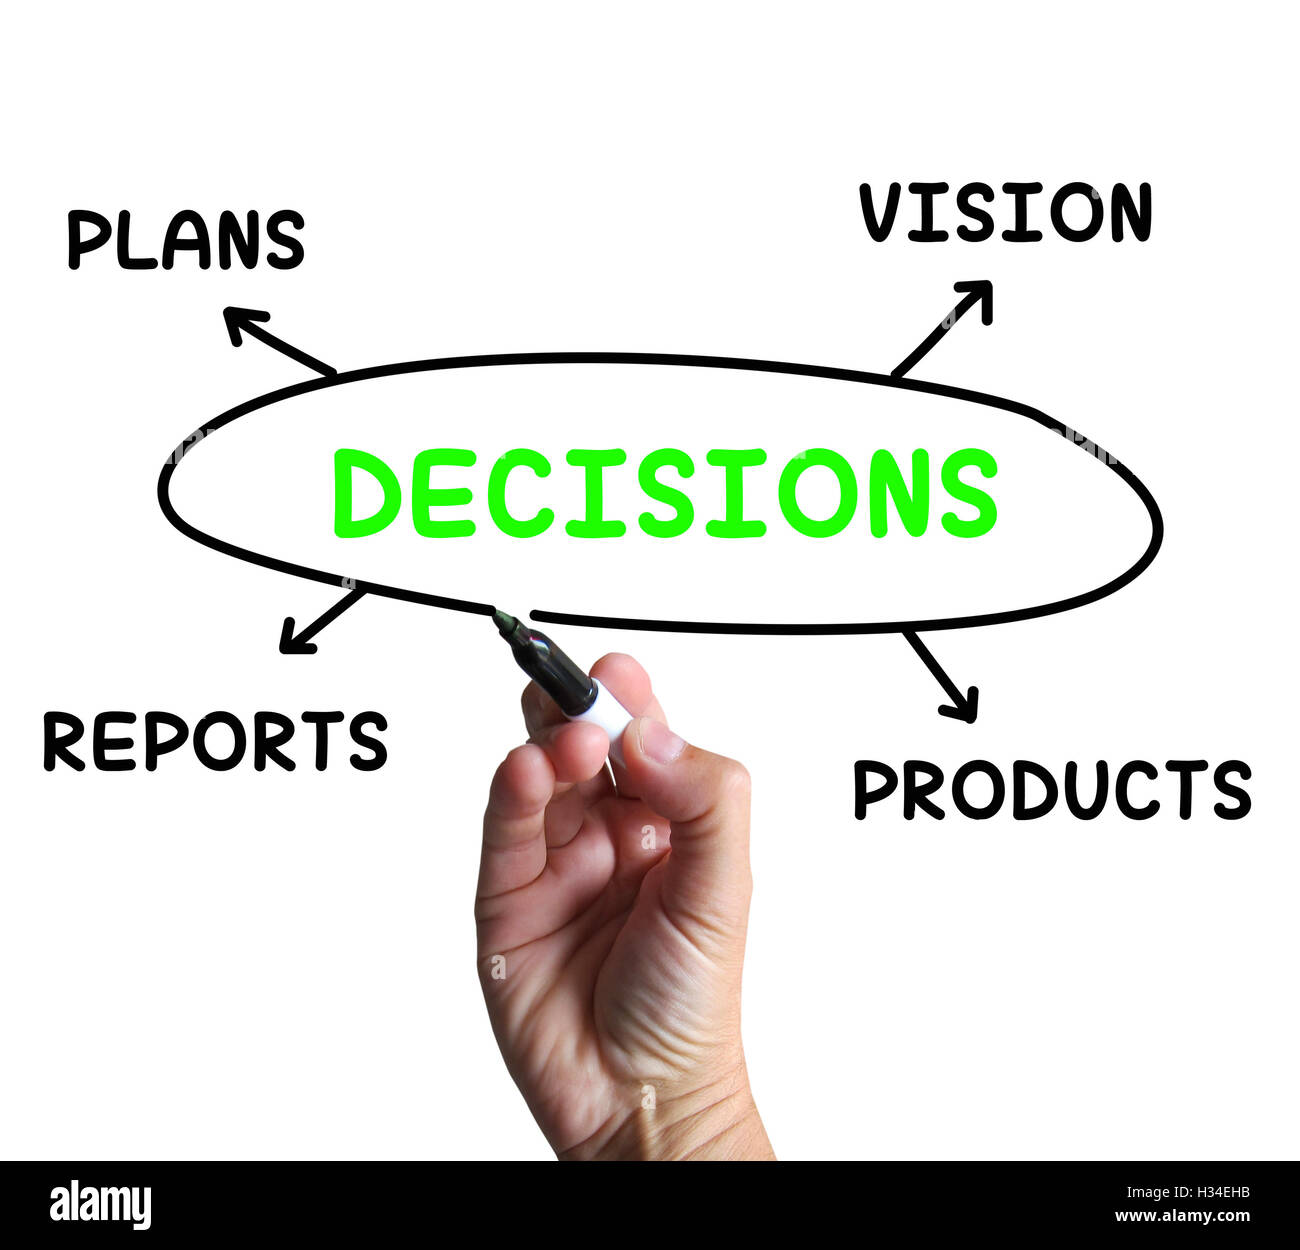 Diagrama de decisiones significa visión planes y opciones de producto Foto de stock